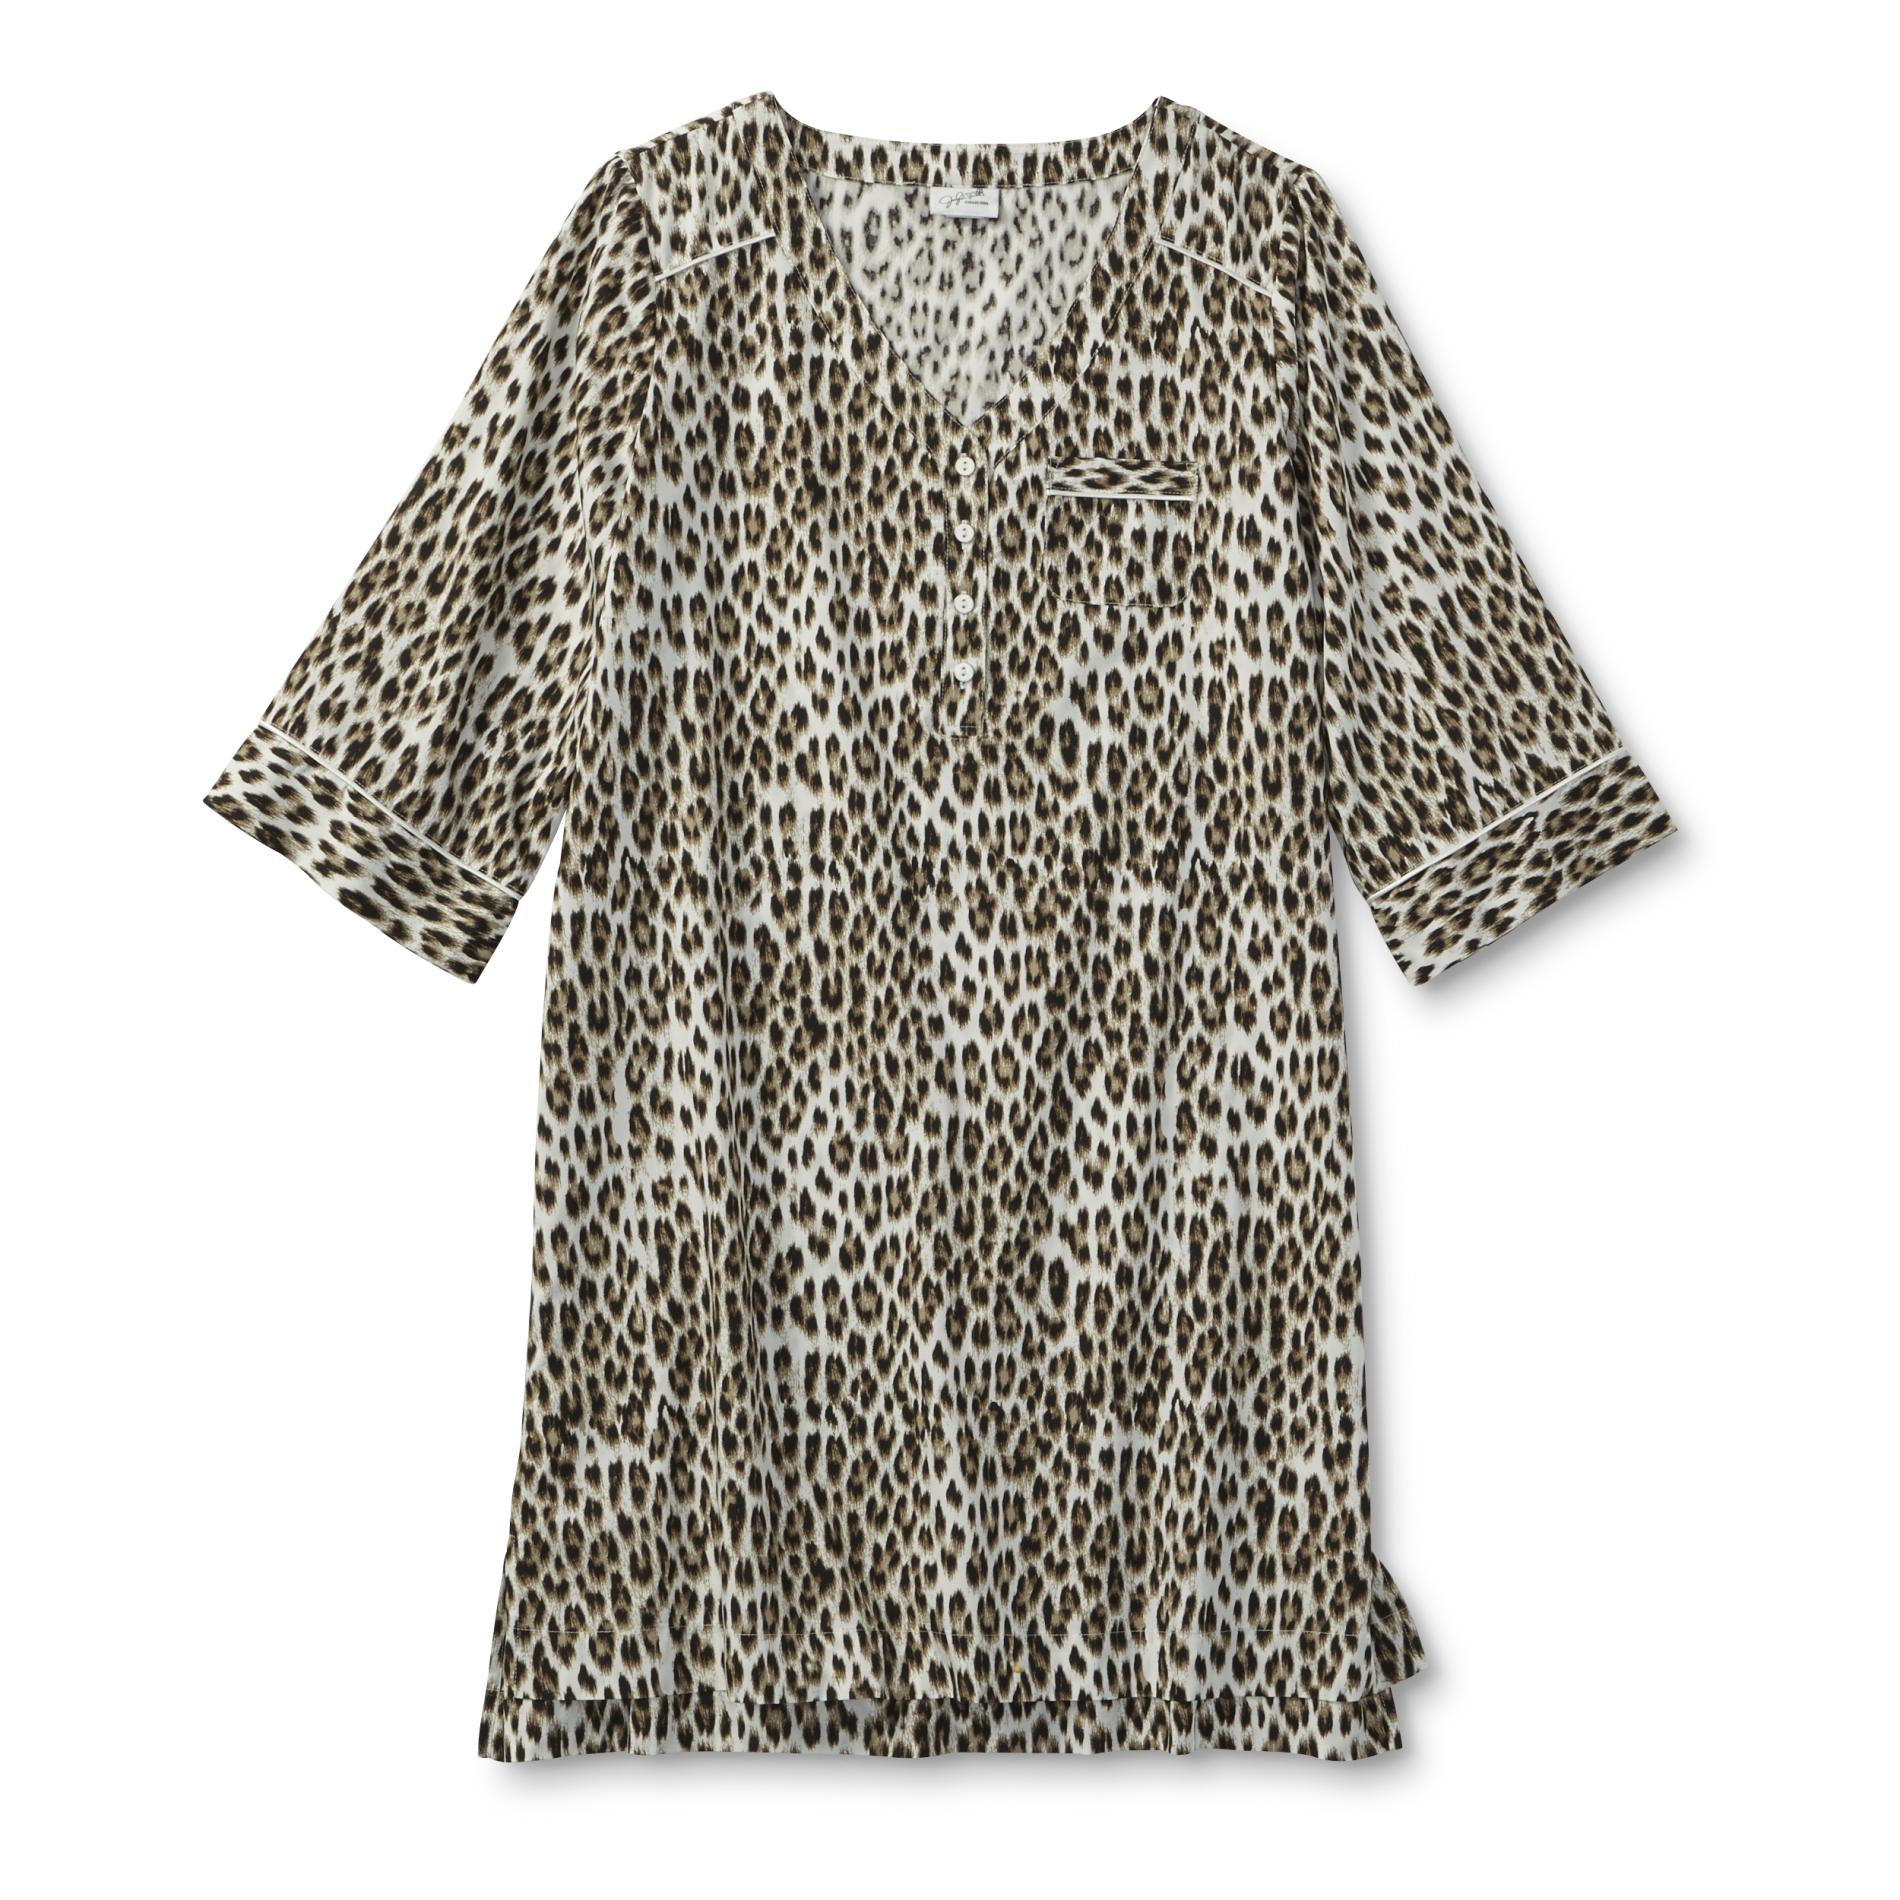 Jaclyn Smith Women's Plus Pocket Nightgown - Leopard